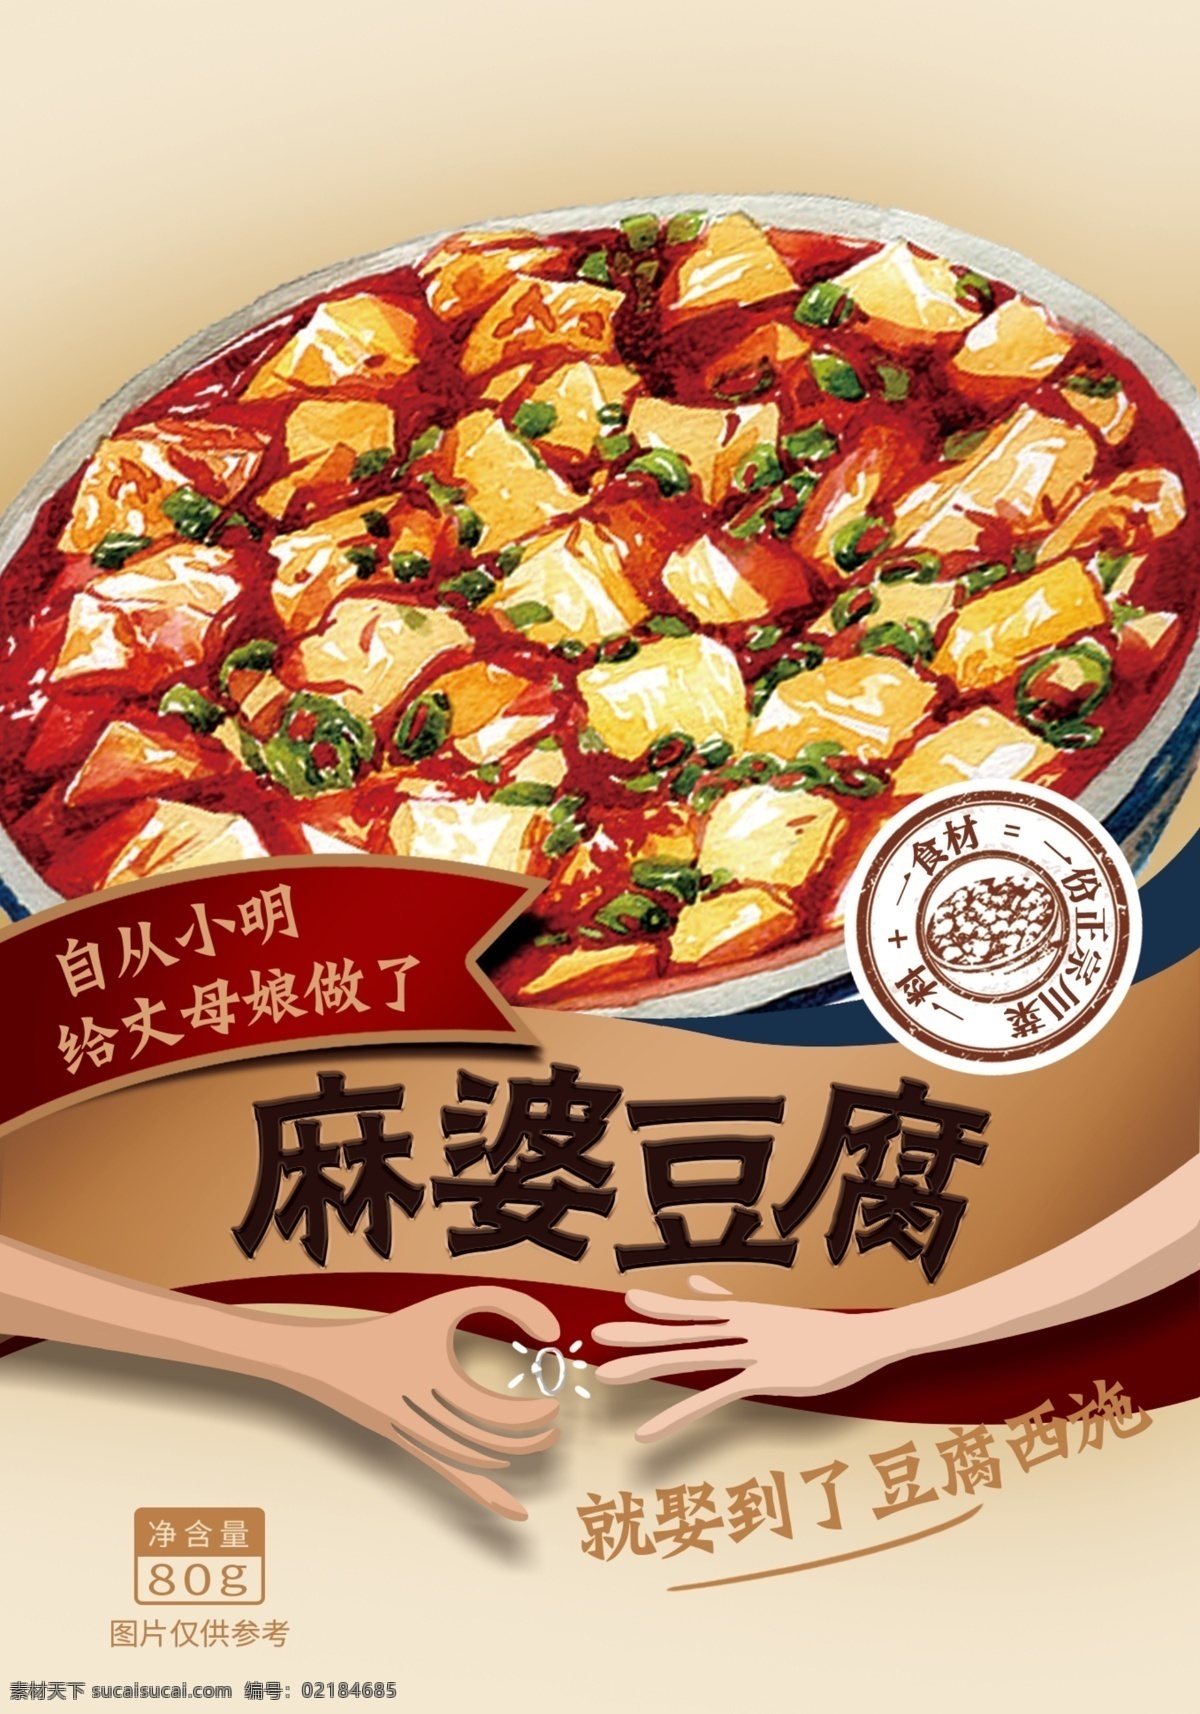 麻 婆 豆腐 调料 包装 麻婆豆腐 手绘 插画 食材 日式 复古 包装设计